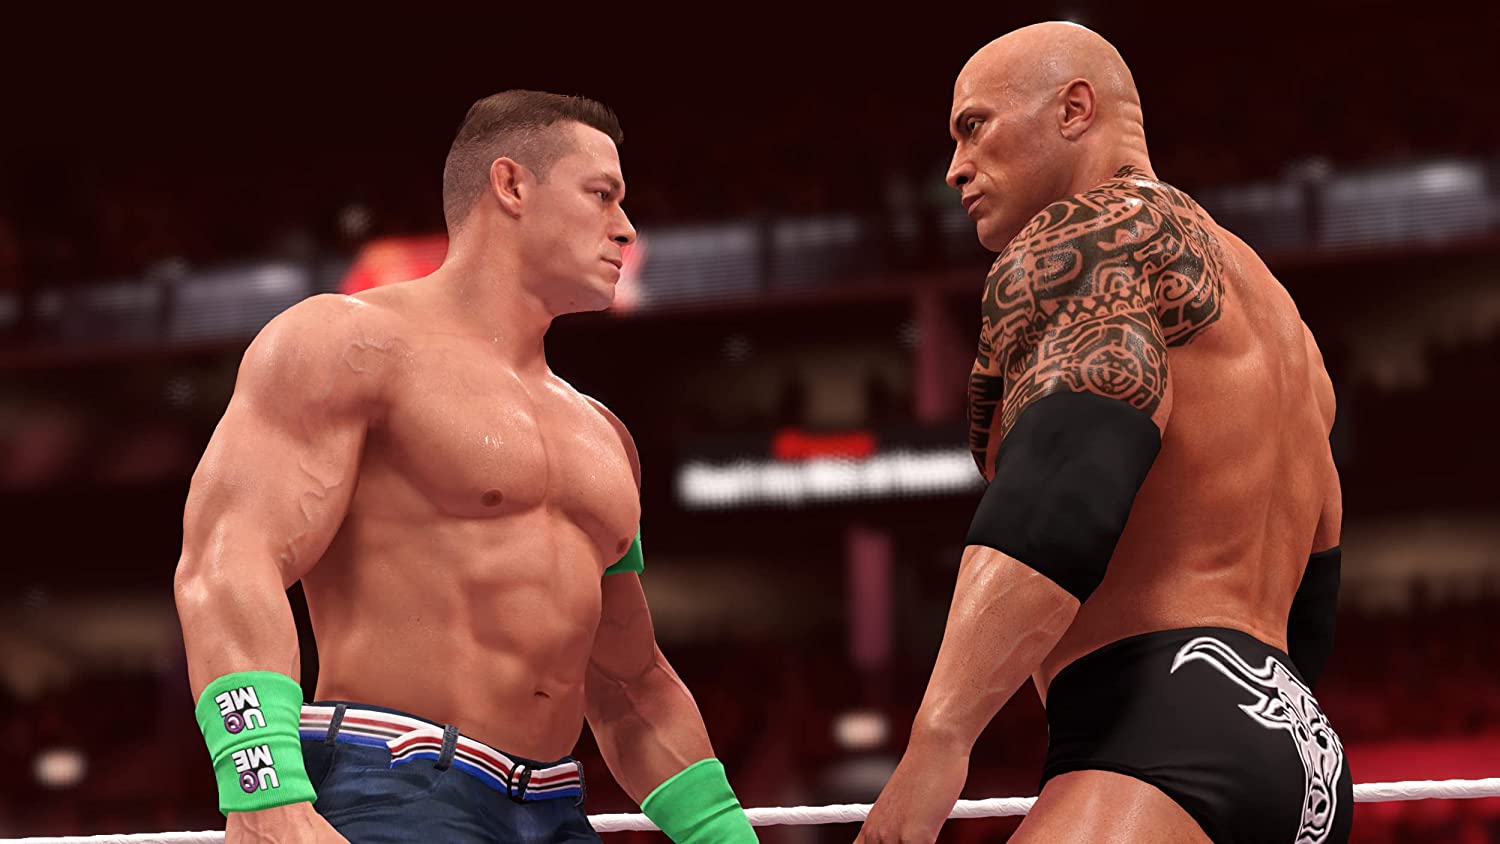 WWE 2K22 nWo 4-Life Edition Xbox One & Series X|S KEY🔑